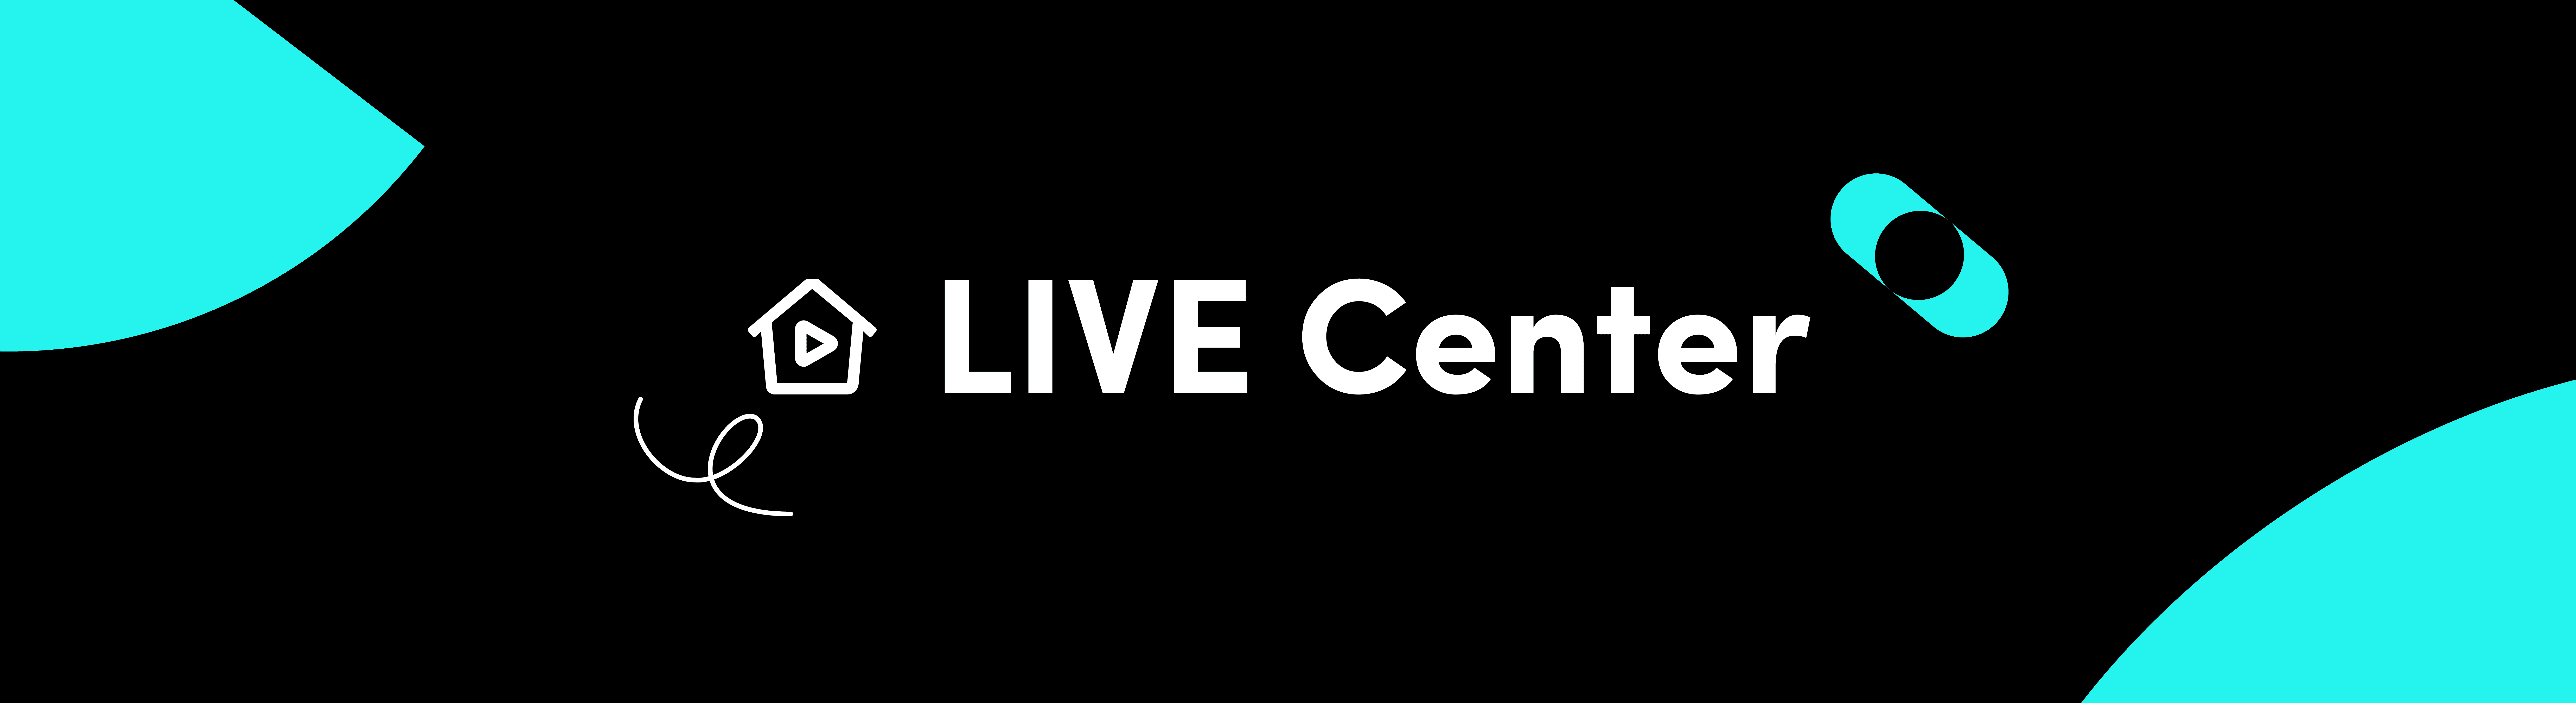 Livecounts.io on X: We're happy to introduce TikTok Live View